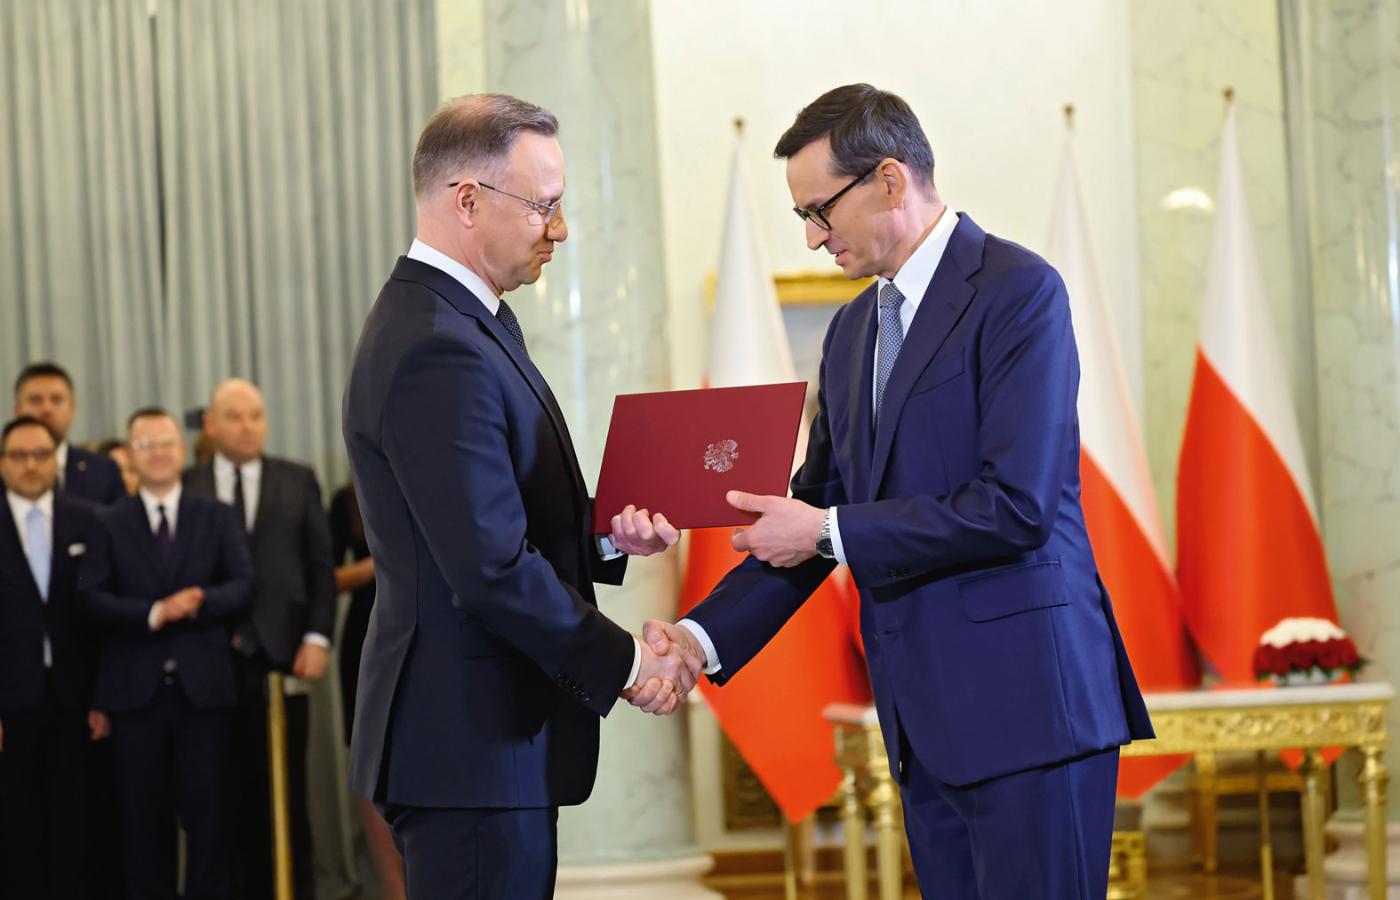 Prezydent Duda podczas zaprzysiężenia „chwilowego” rządu premiera Morawieckiego.